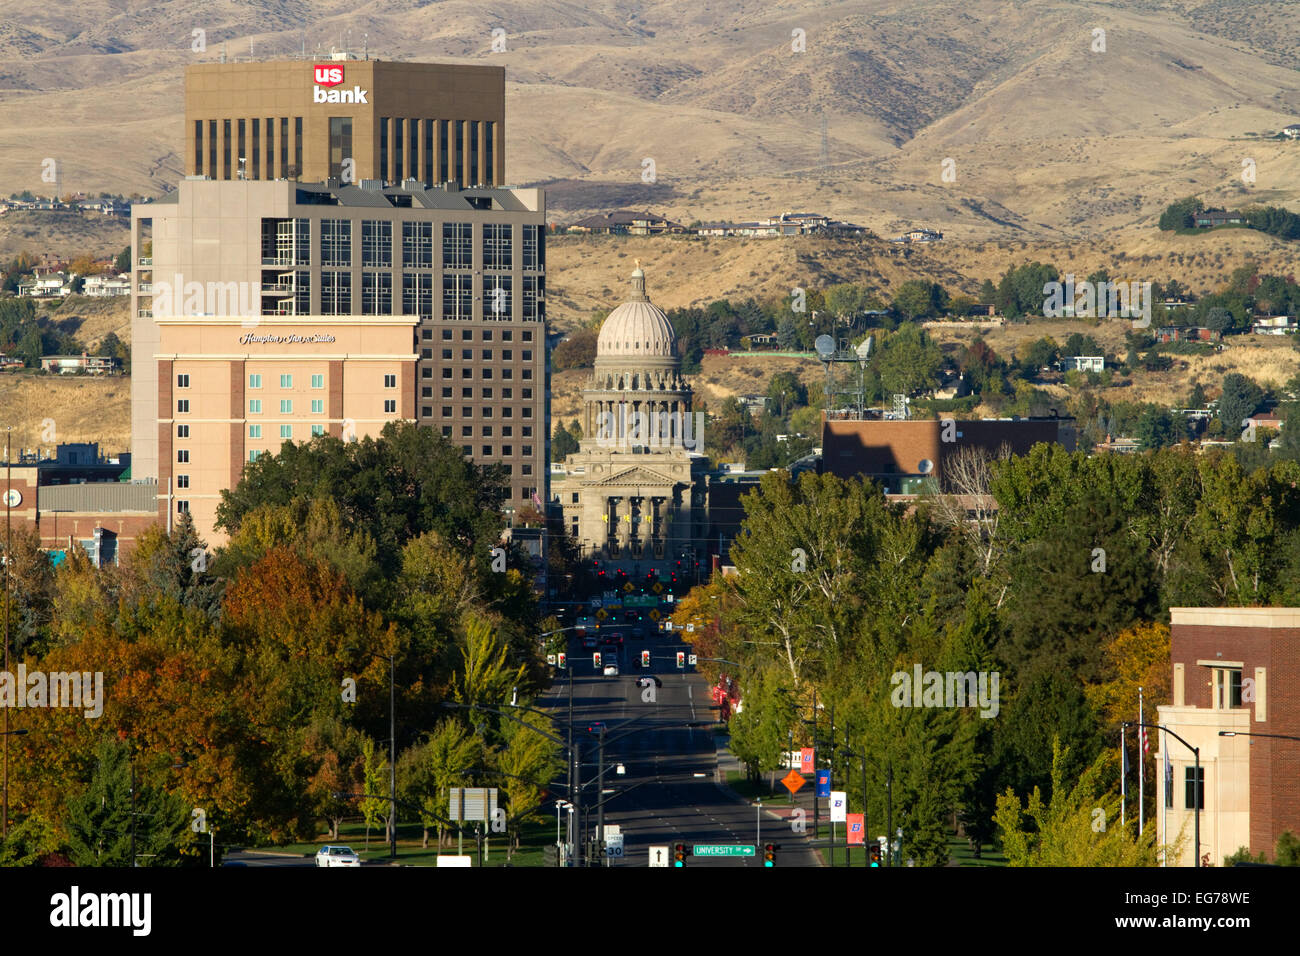 Paesaggio urbano della città capitale Boise, Idaho, Stati Uniti d'America. Foto Stock